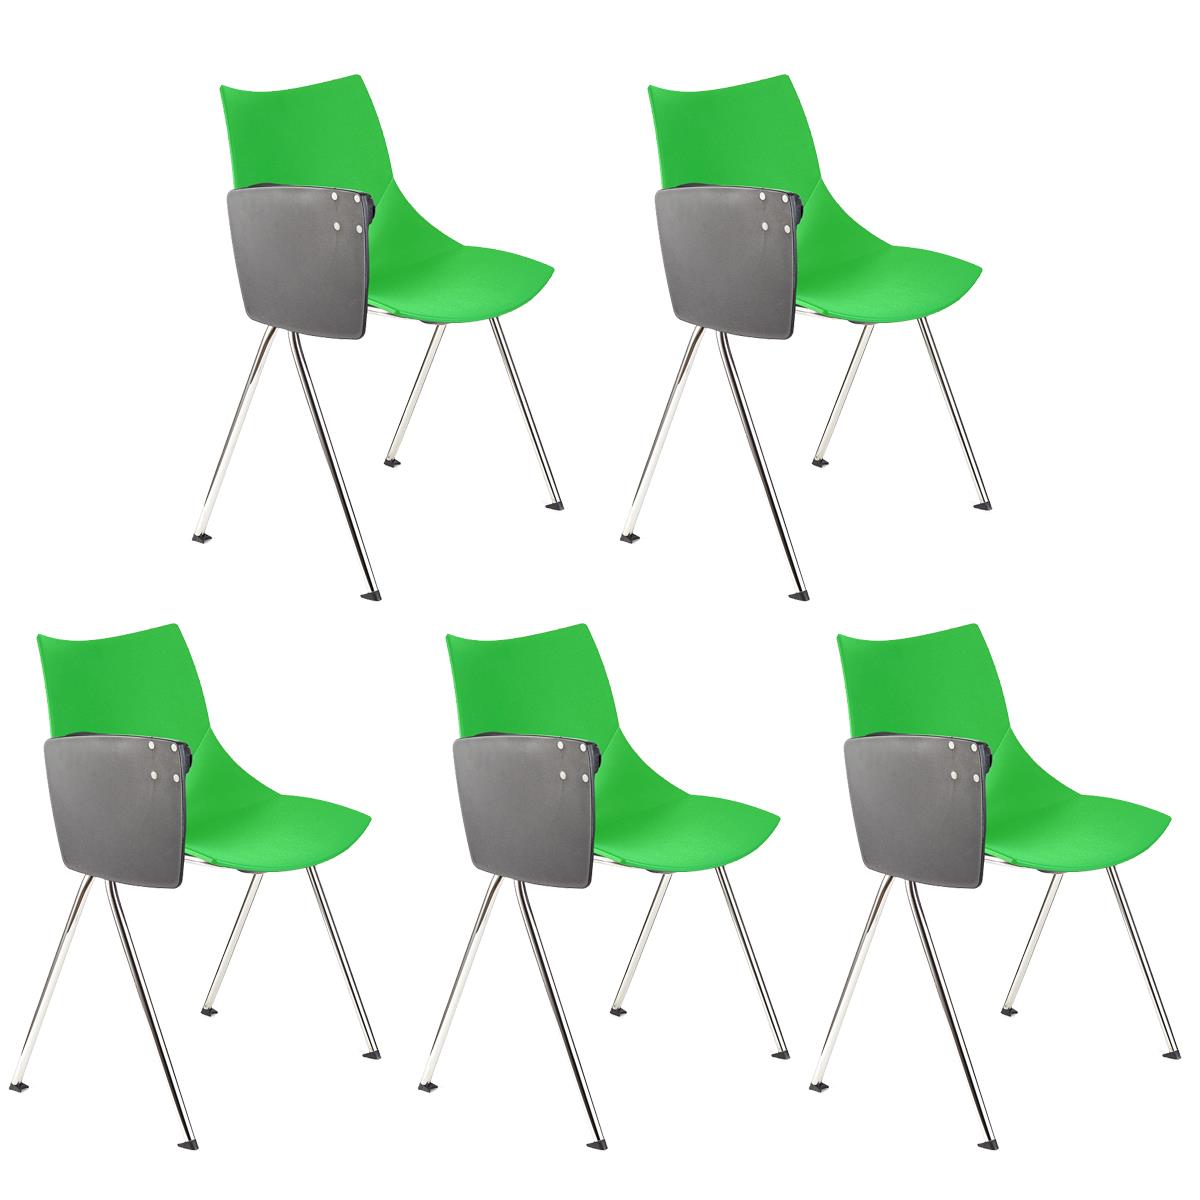 Lote de 5 sillas de Confidente AMIR CON PALA, Cómodas y Prácticas, Color Verde